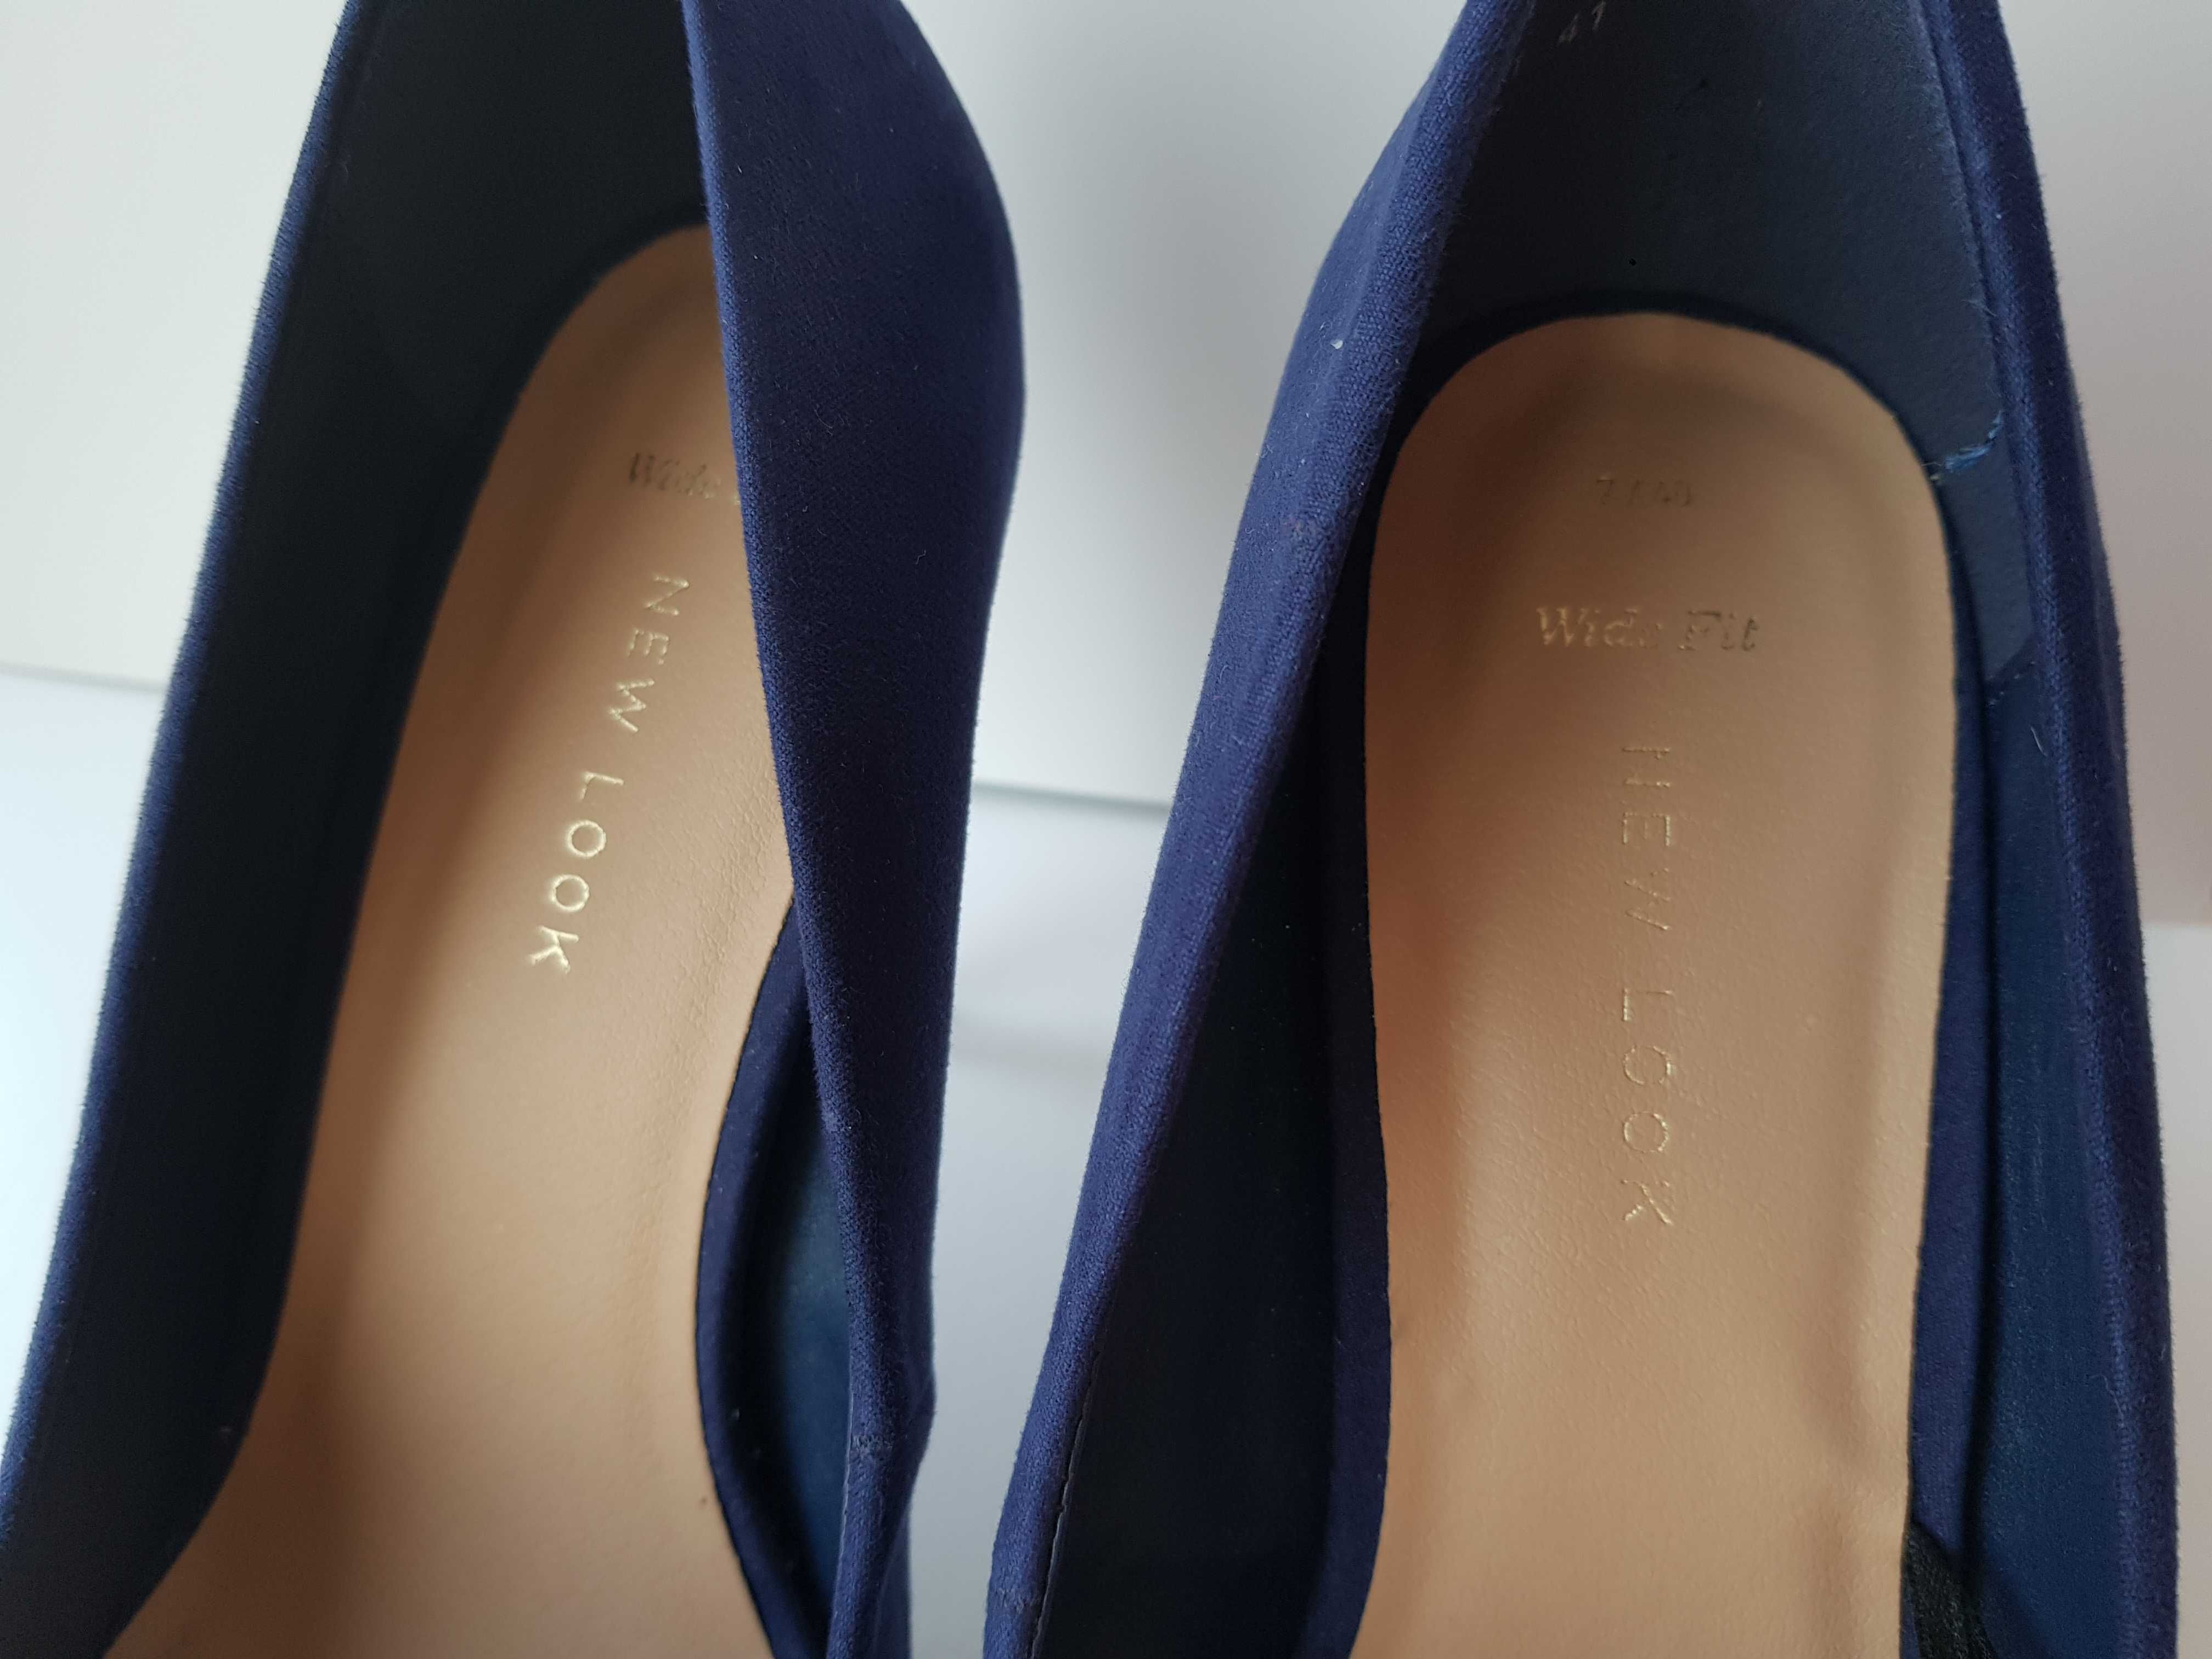 Pantofi bleumarin eleganti stiletto NEW LOOK